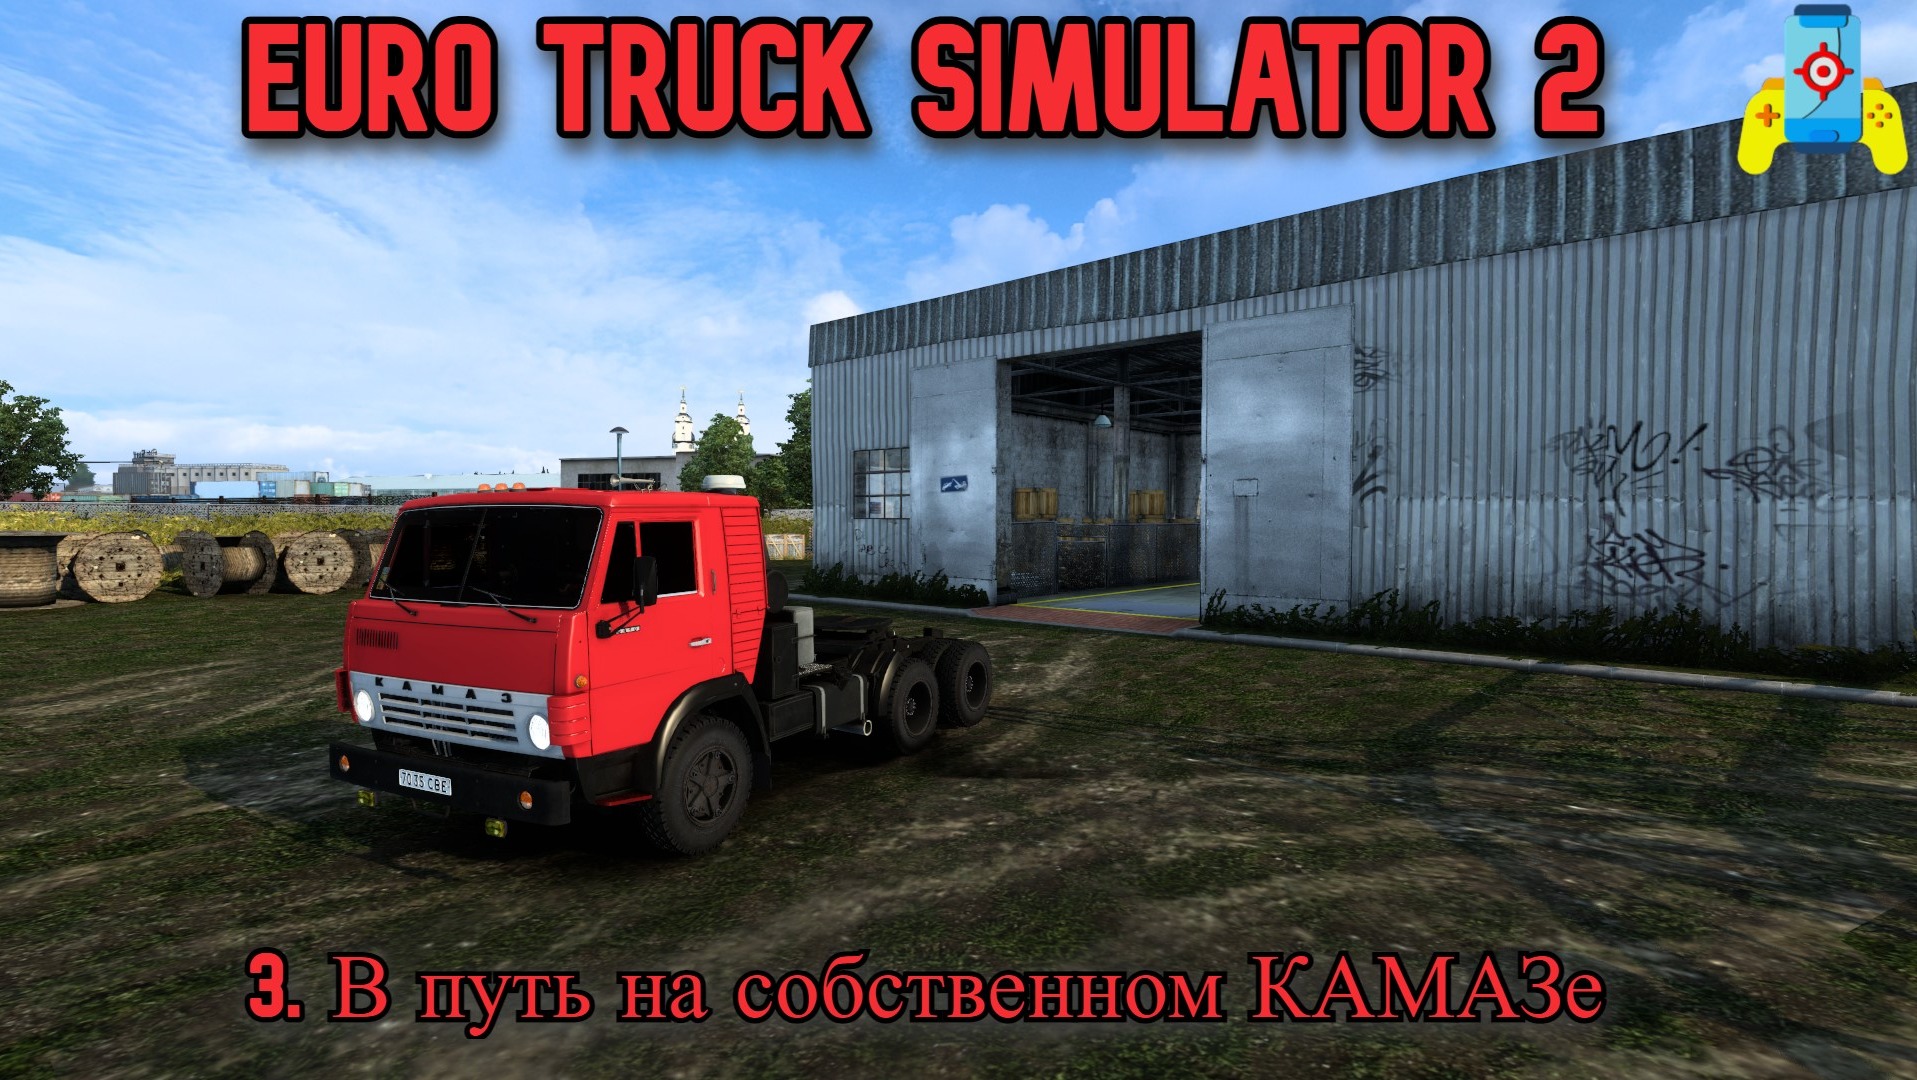 The Euro Truck Simulator 2 №3 В путь на собственном КАМАЗе